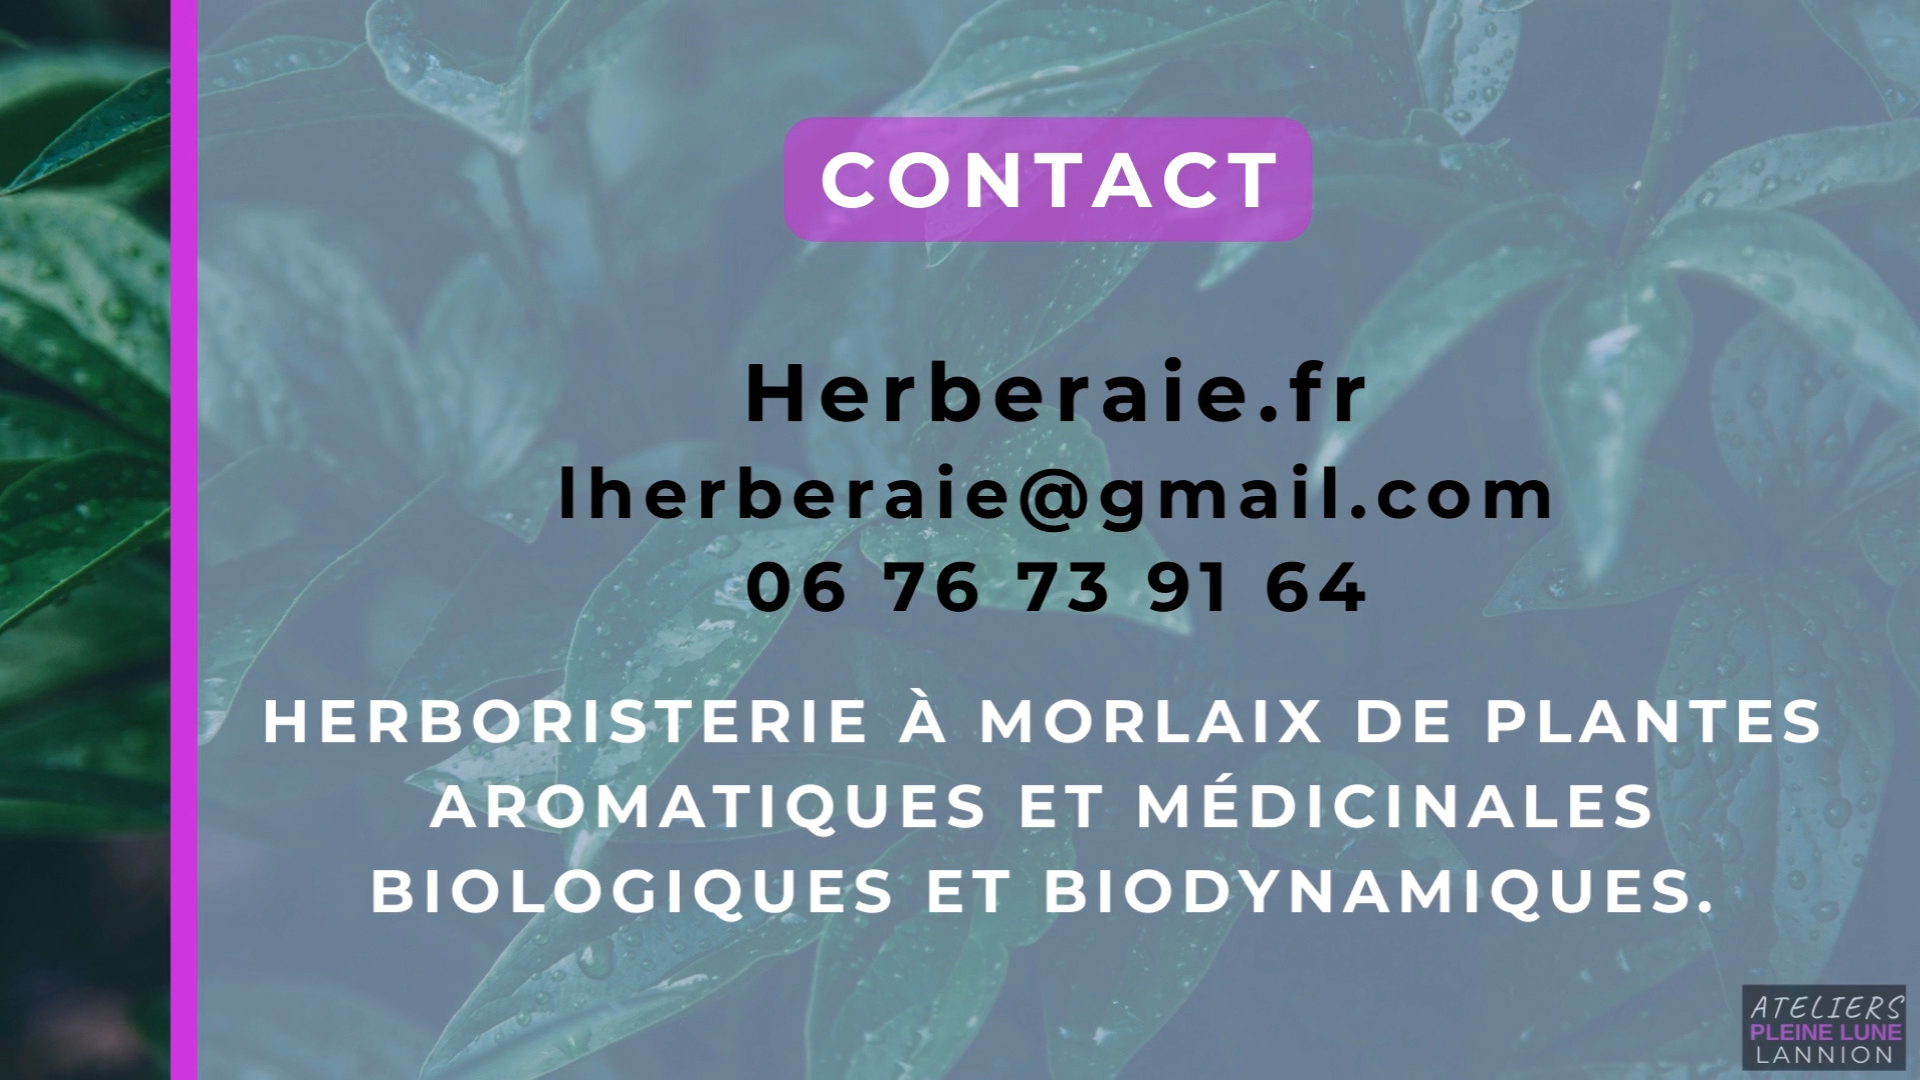 Herboriste - L-herberaie - Finistere - Cotes-d-armor - ésotérisme